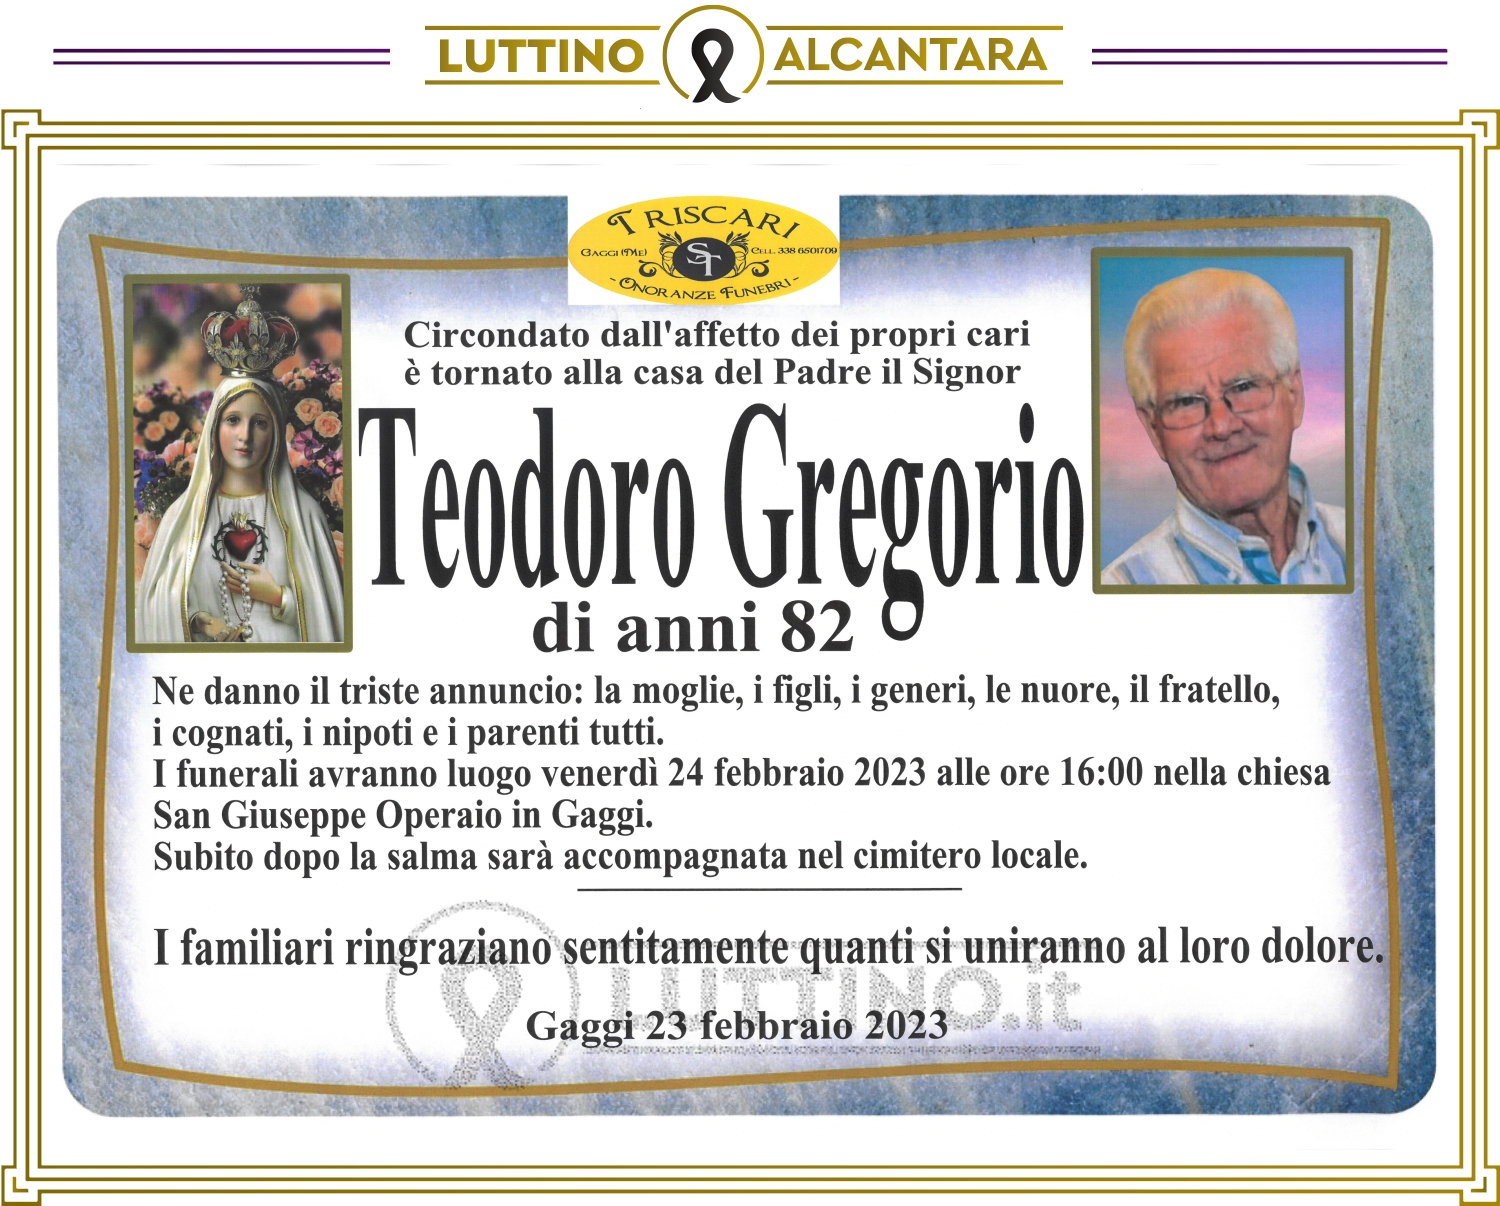 Teodoro Gregorio 